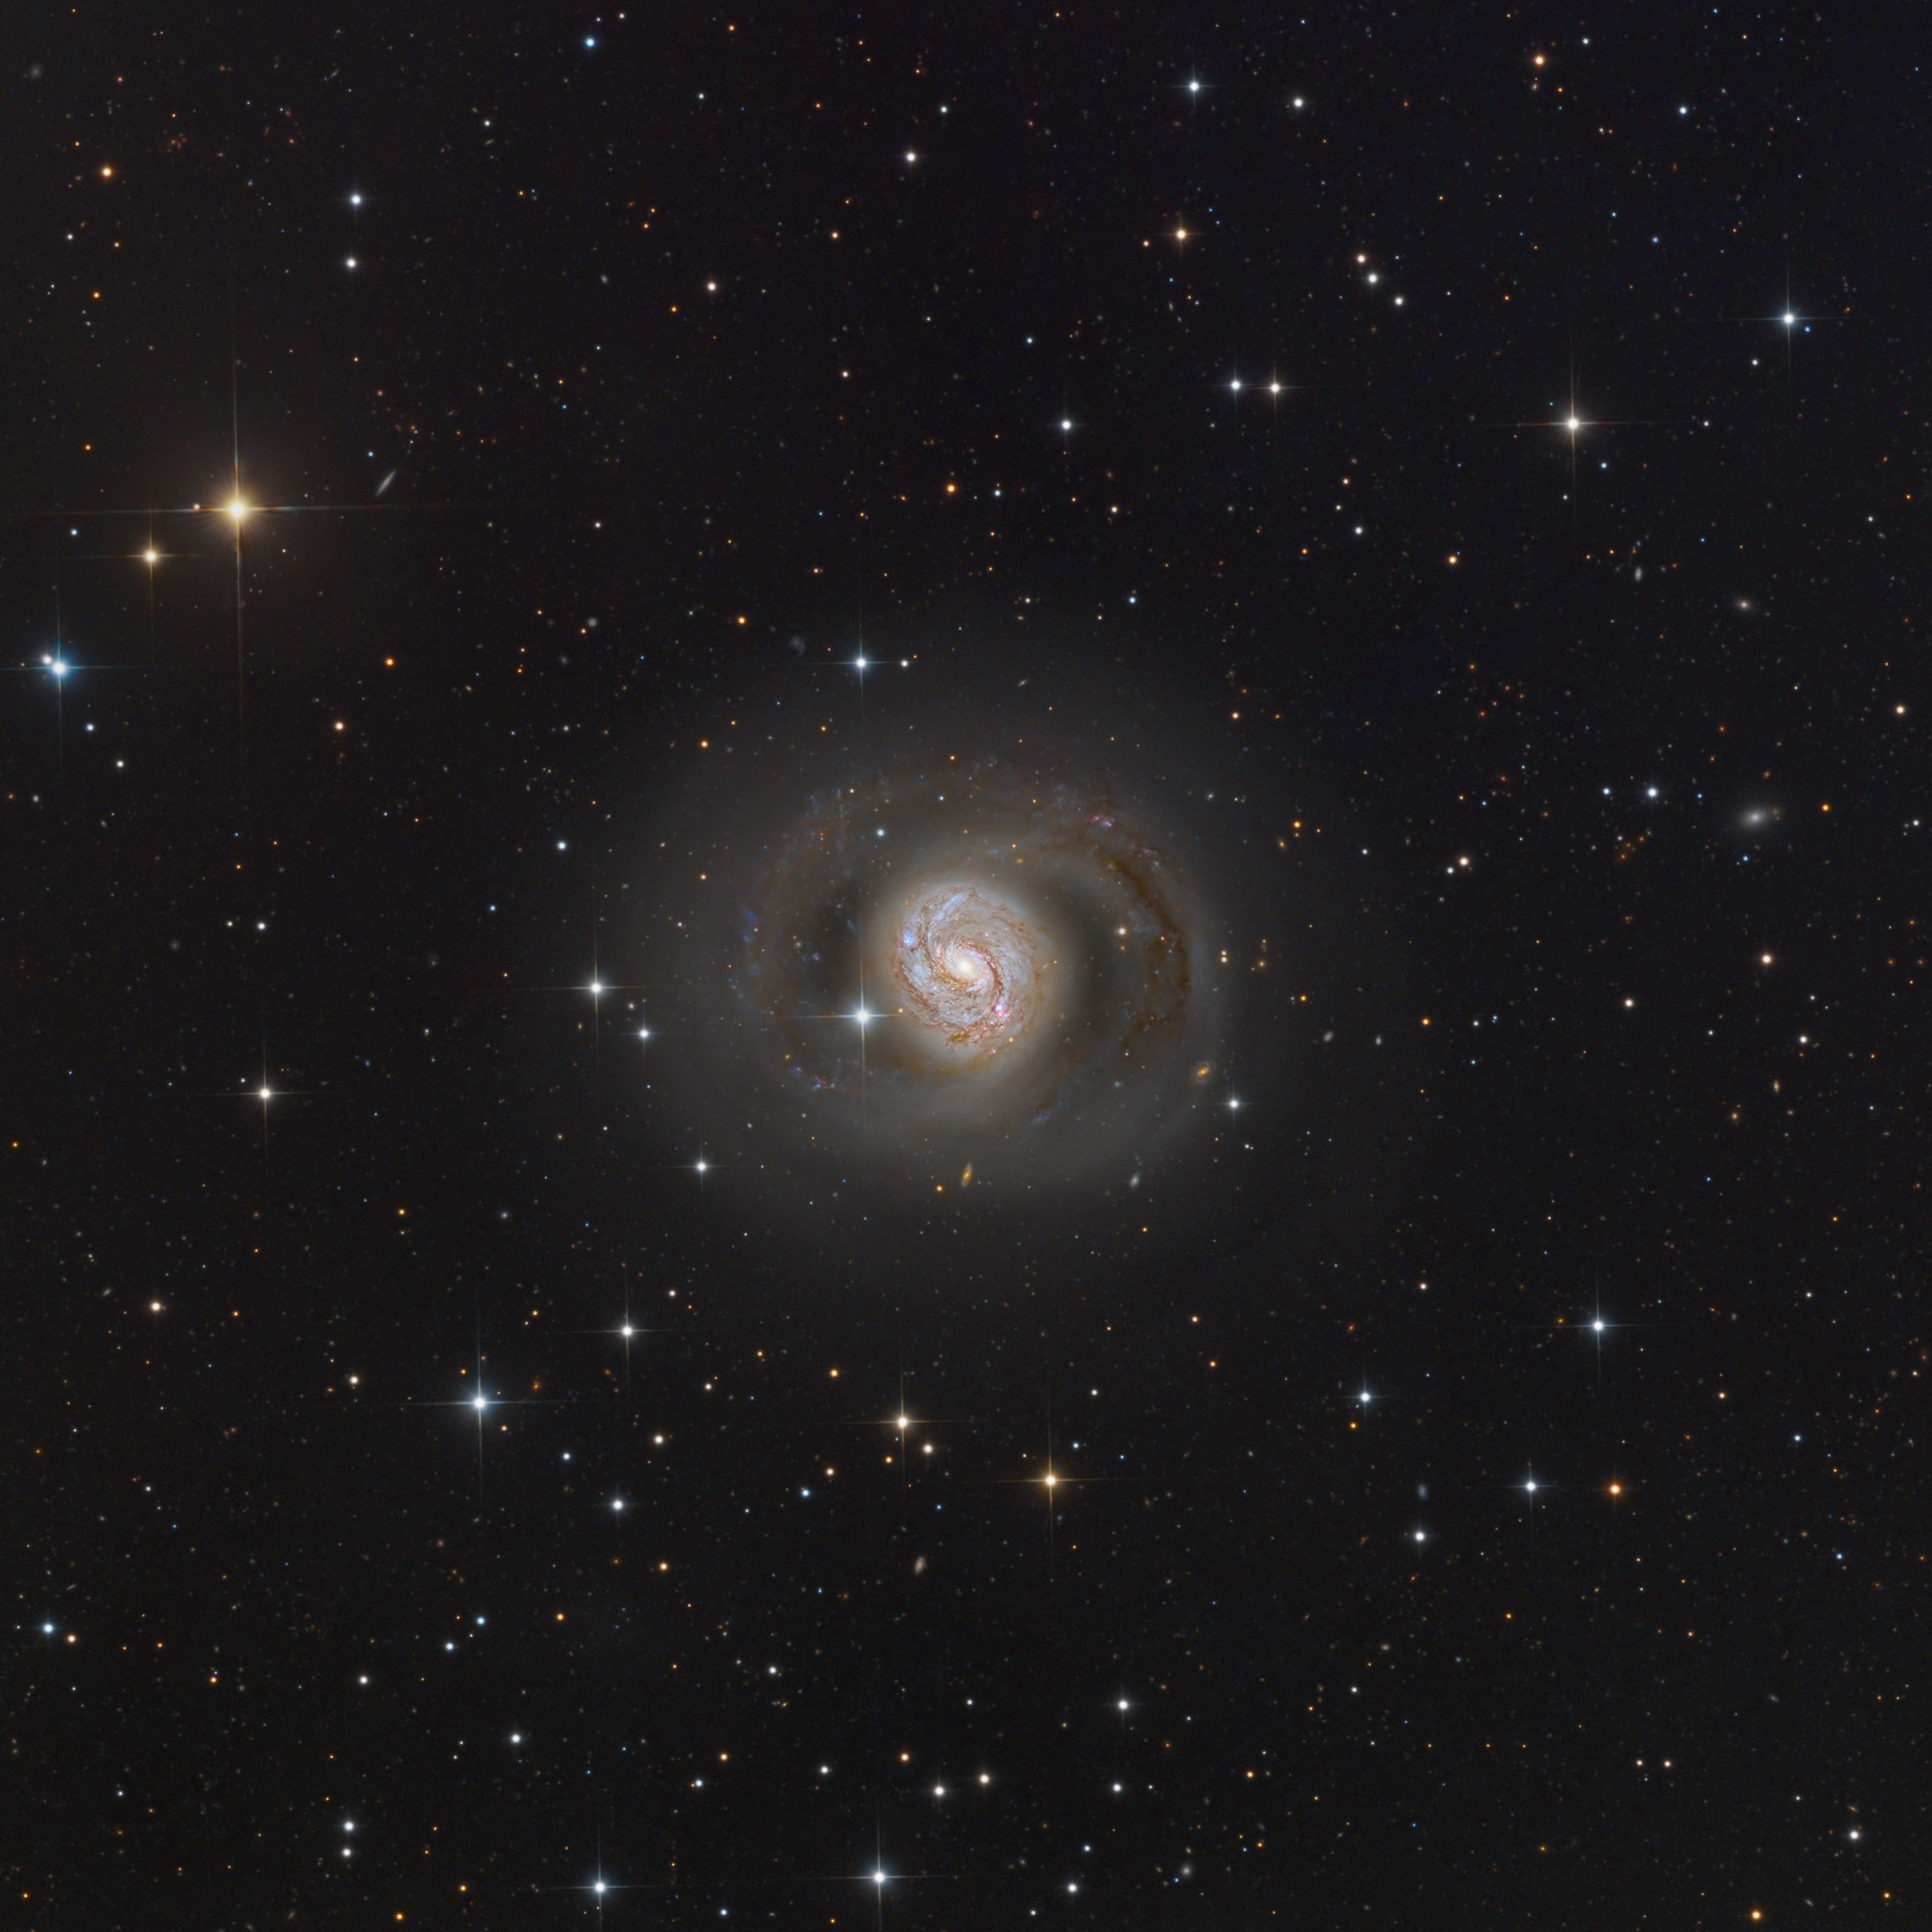 NGC 1068 or M77